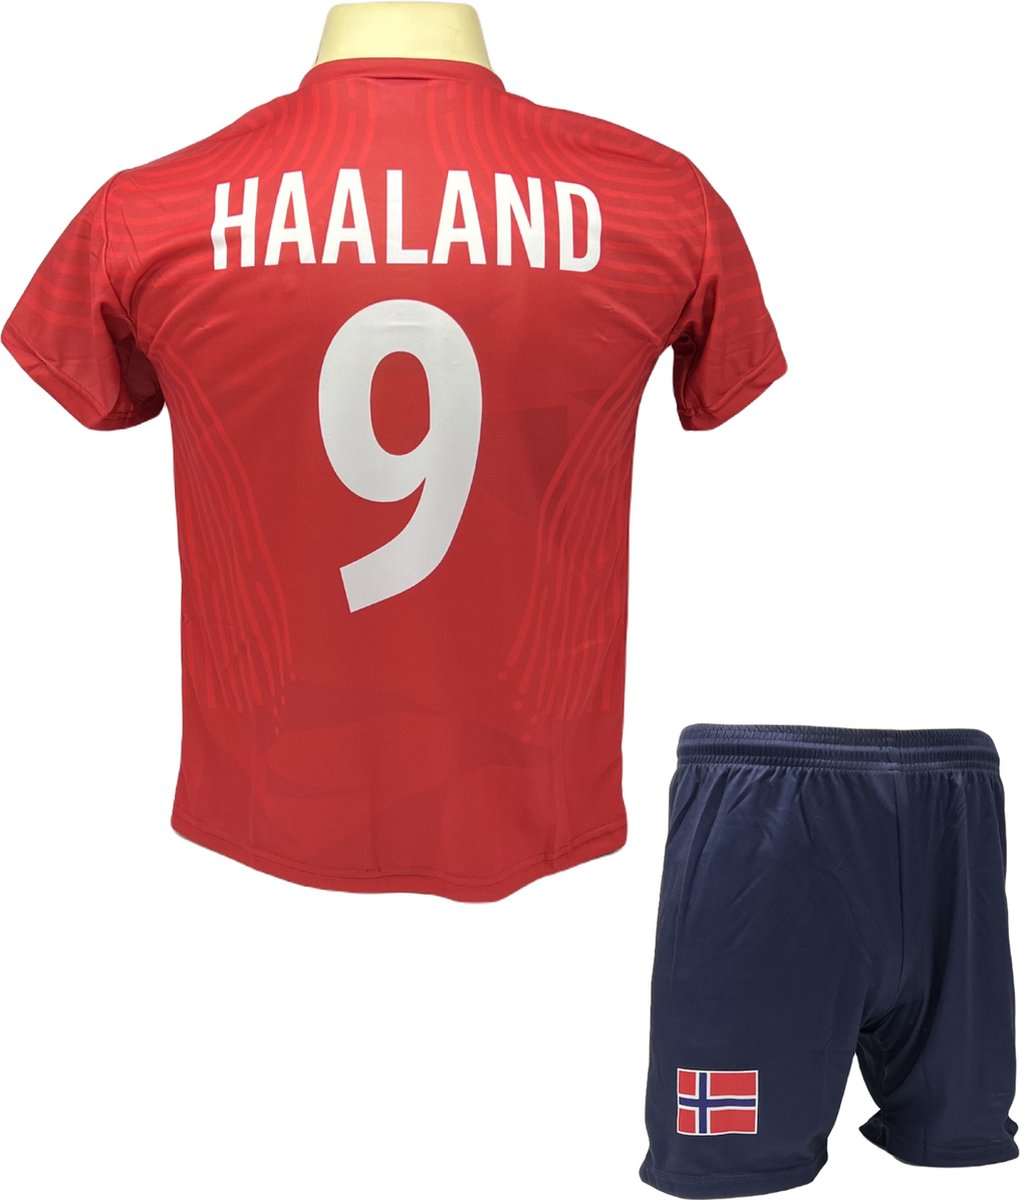 Haaland Voetbalshirt en Broekje Voetbaltenue Noorwegen - Maat S (164)